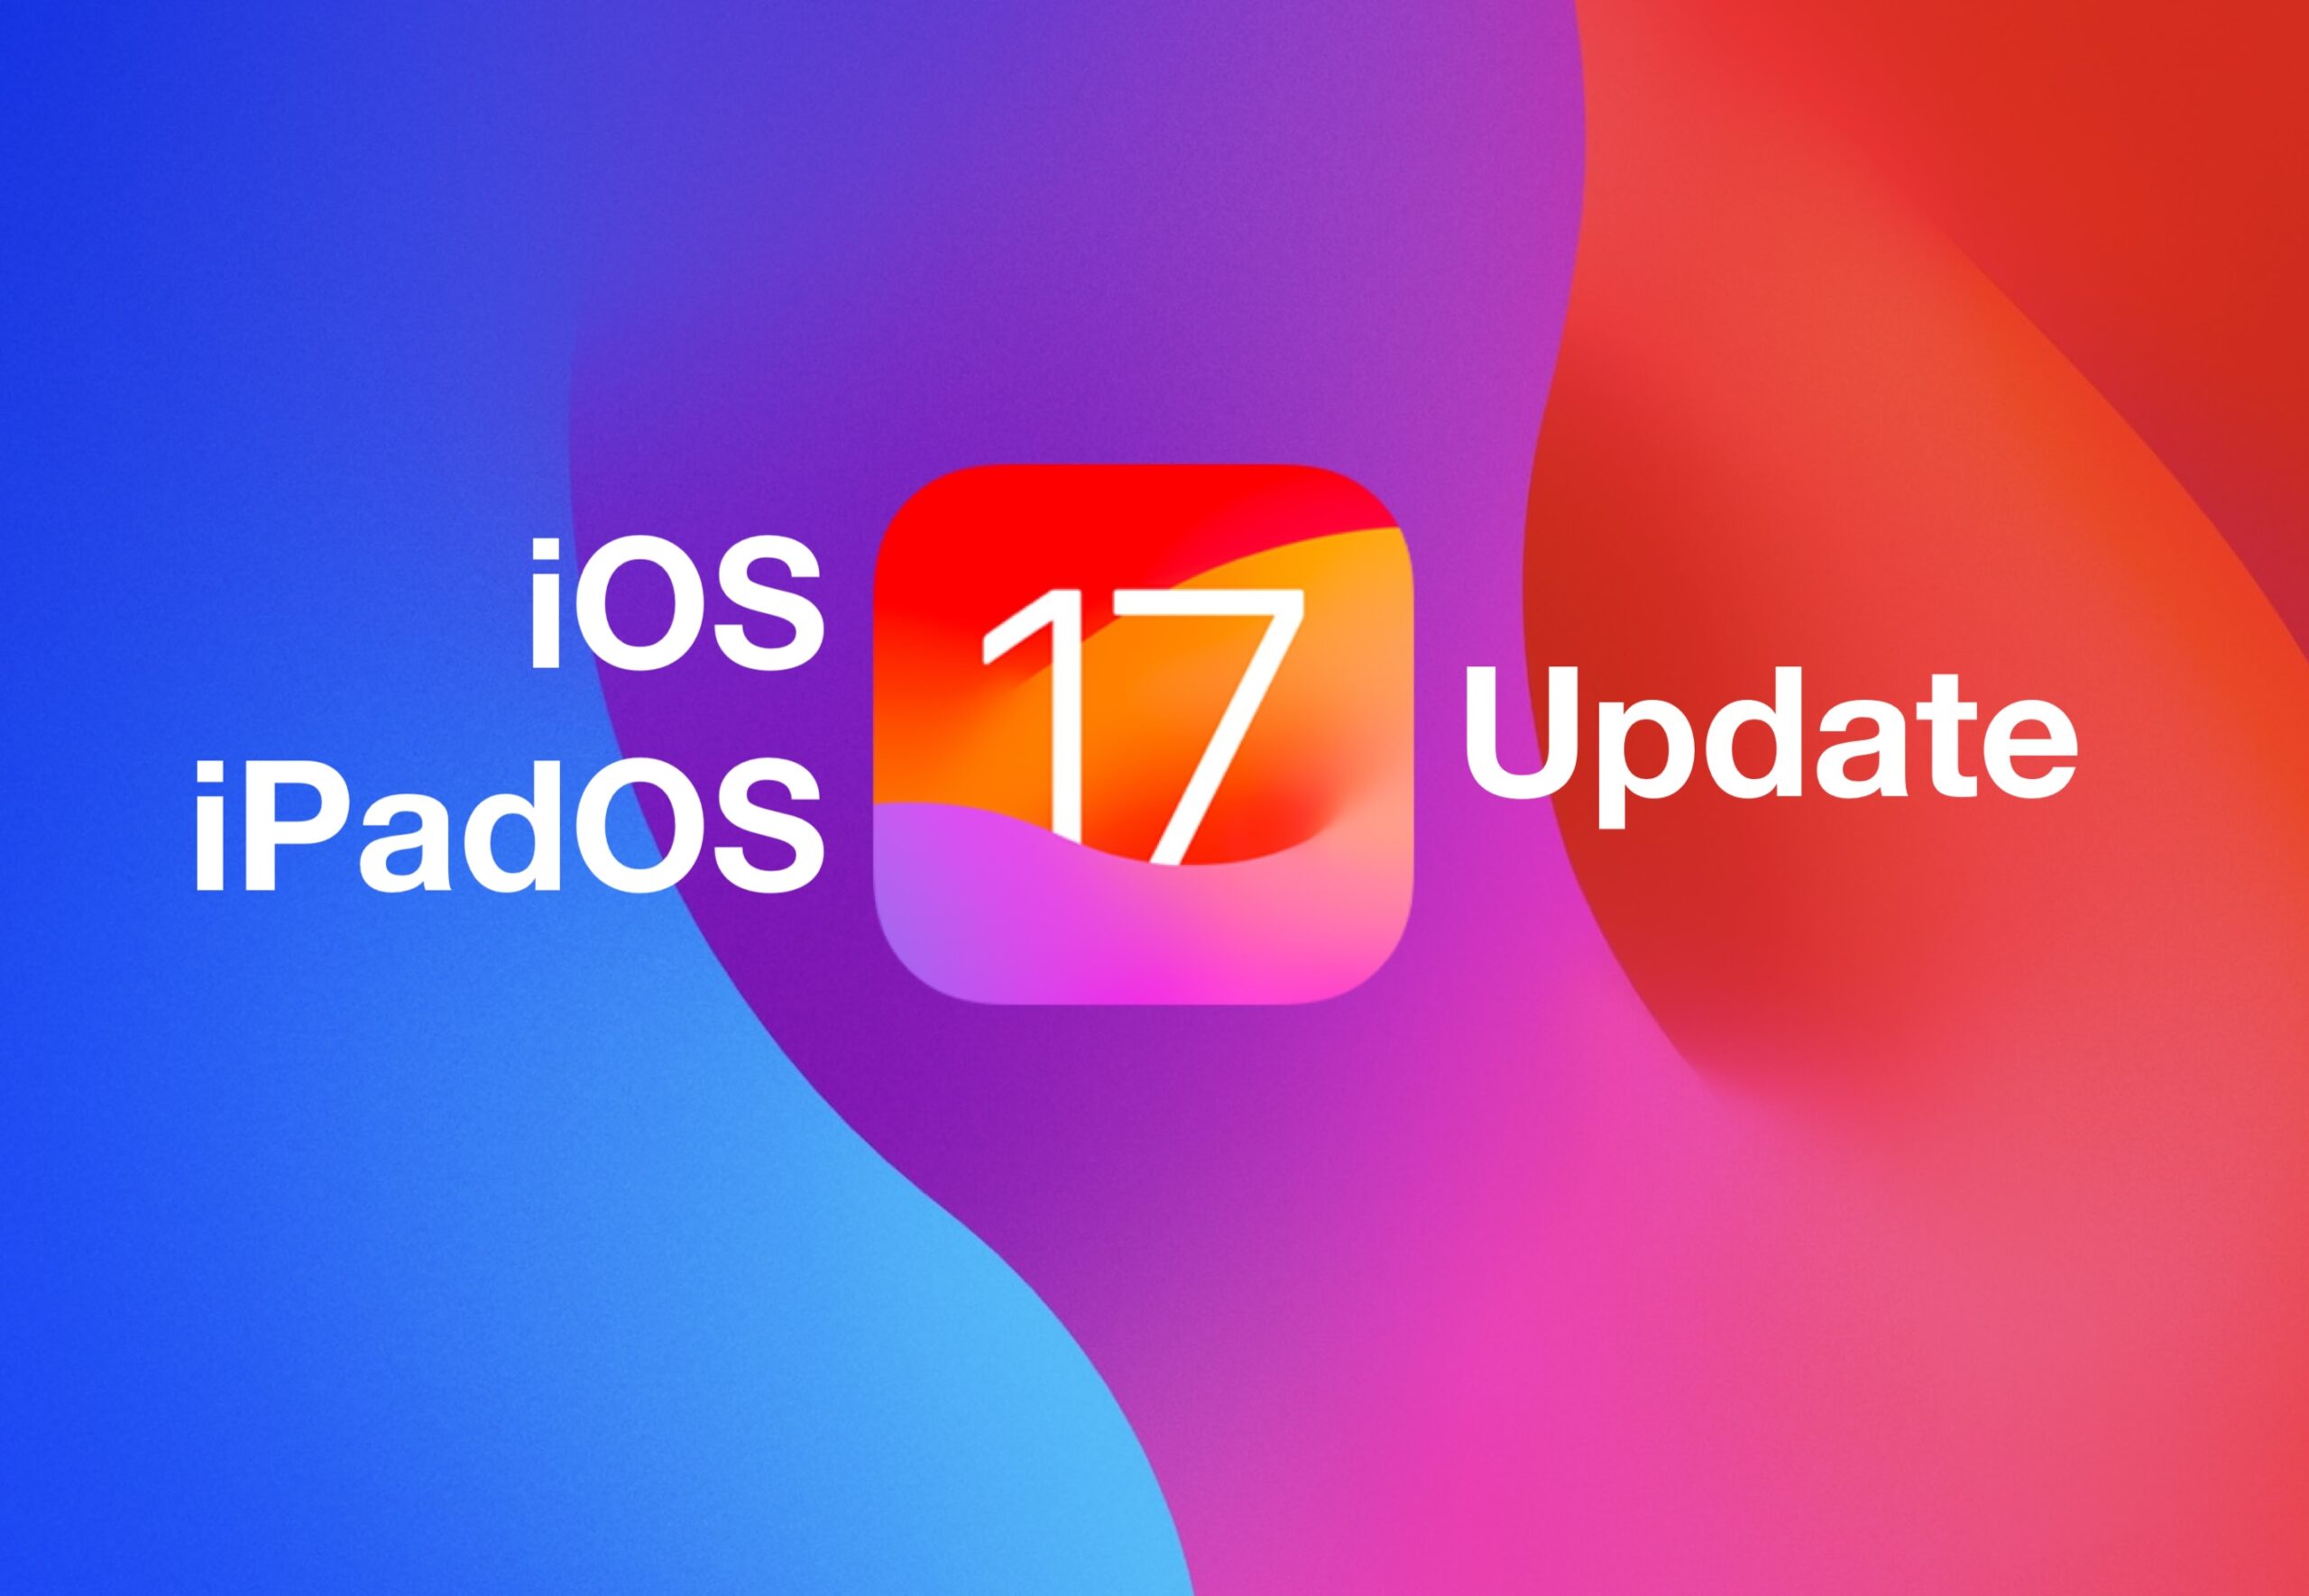 ios ipados 17 updates scaled